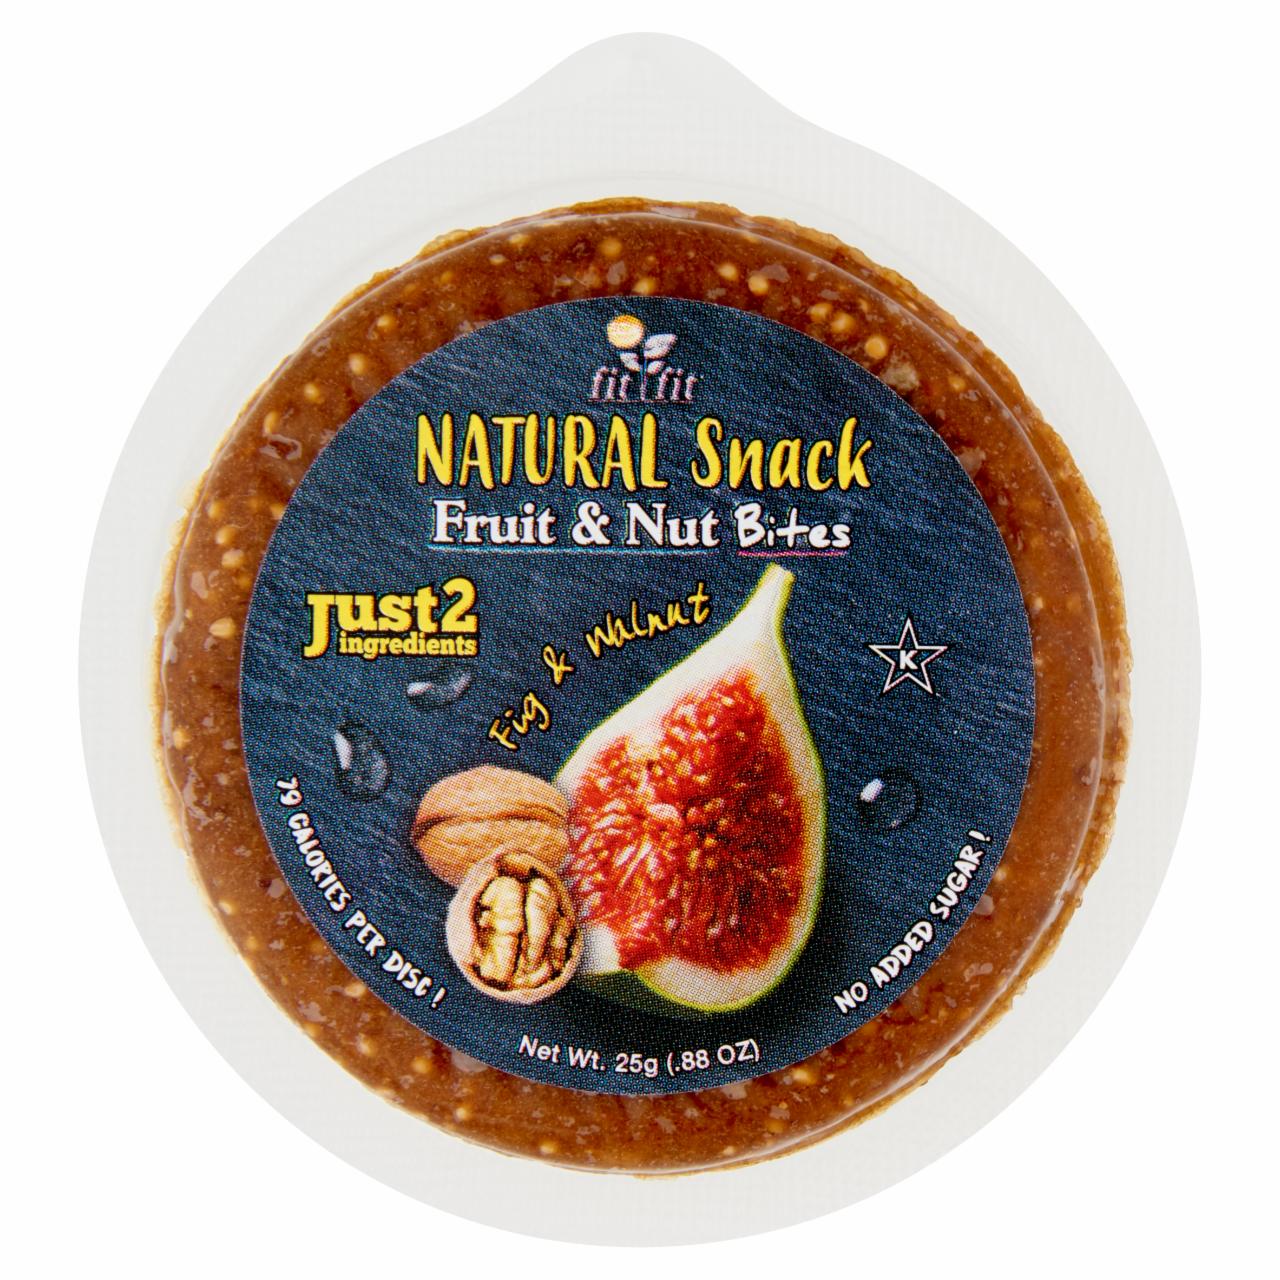 Képek - Fit Fit Natural Snack Fruit & Nut Bites Fig & Walnut 25 g